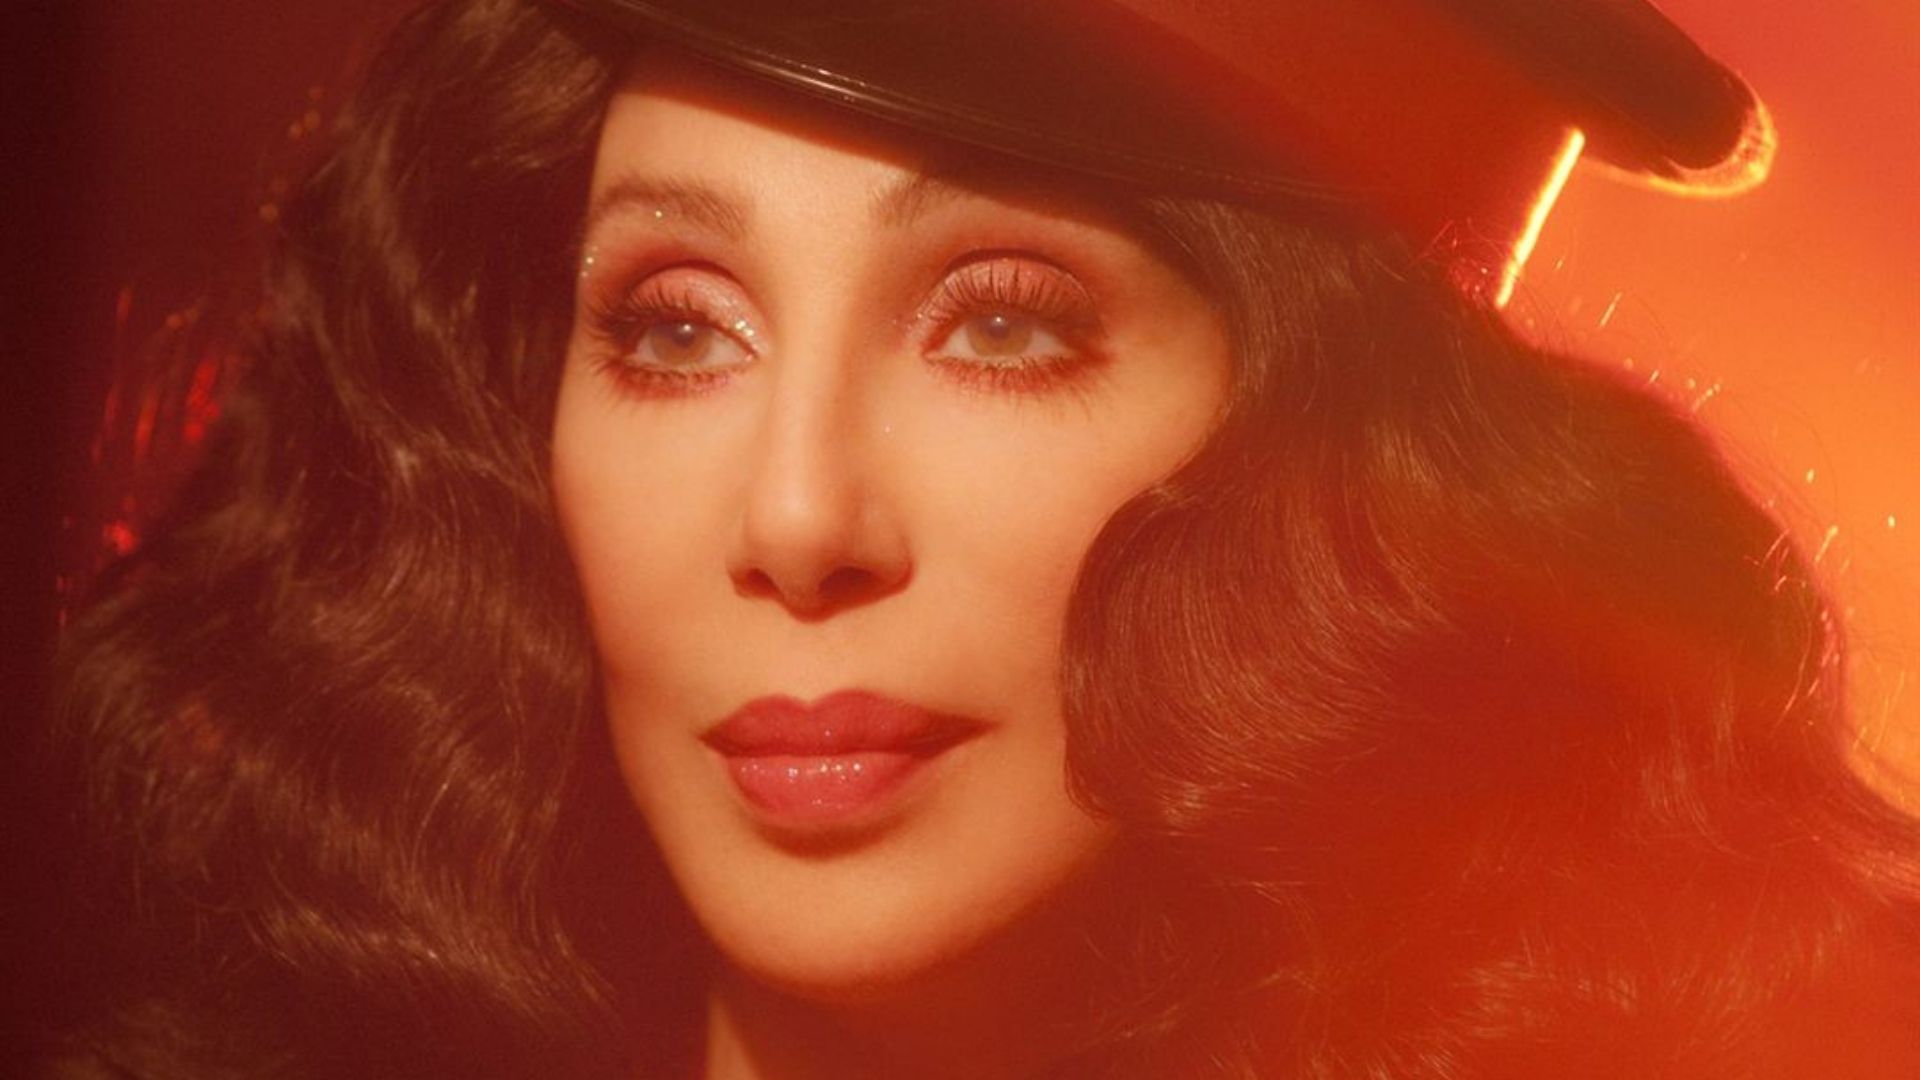 A cantora Cher lançou seu mais novo álbum, chamado 'Christmas', cheio de parcerias musicais.